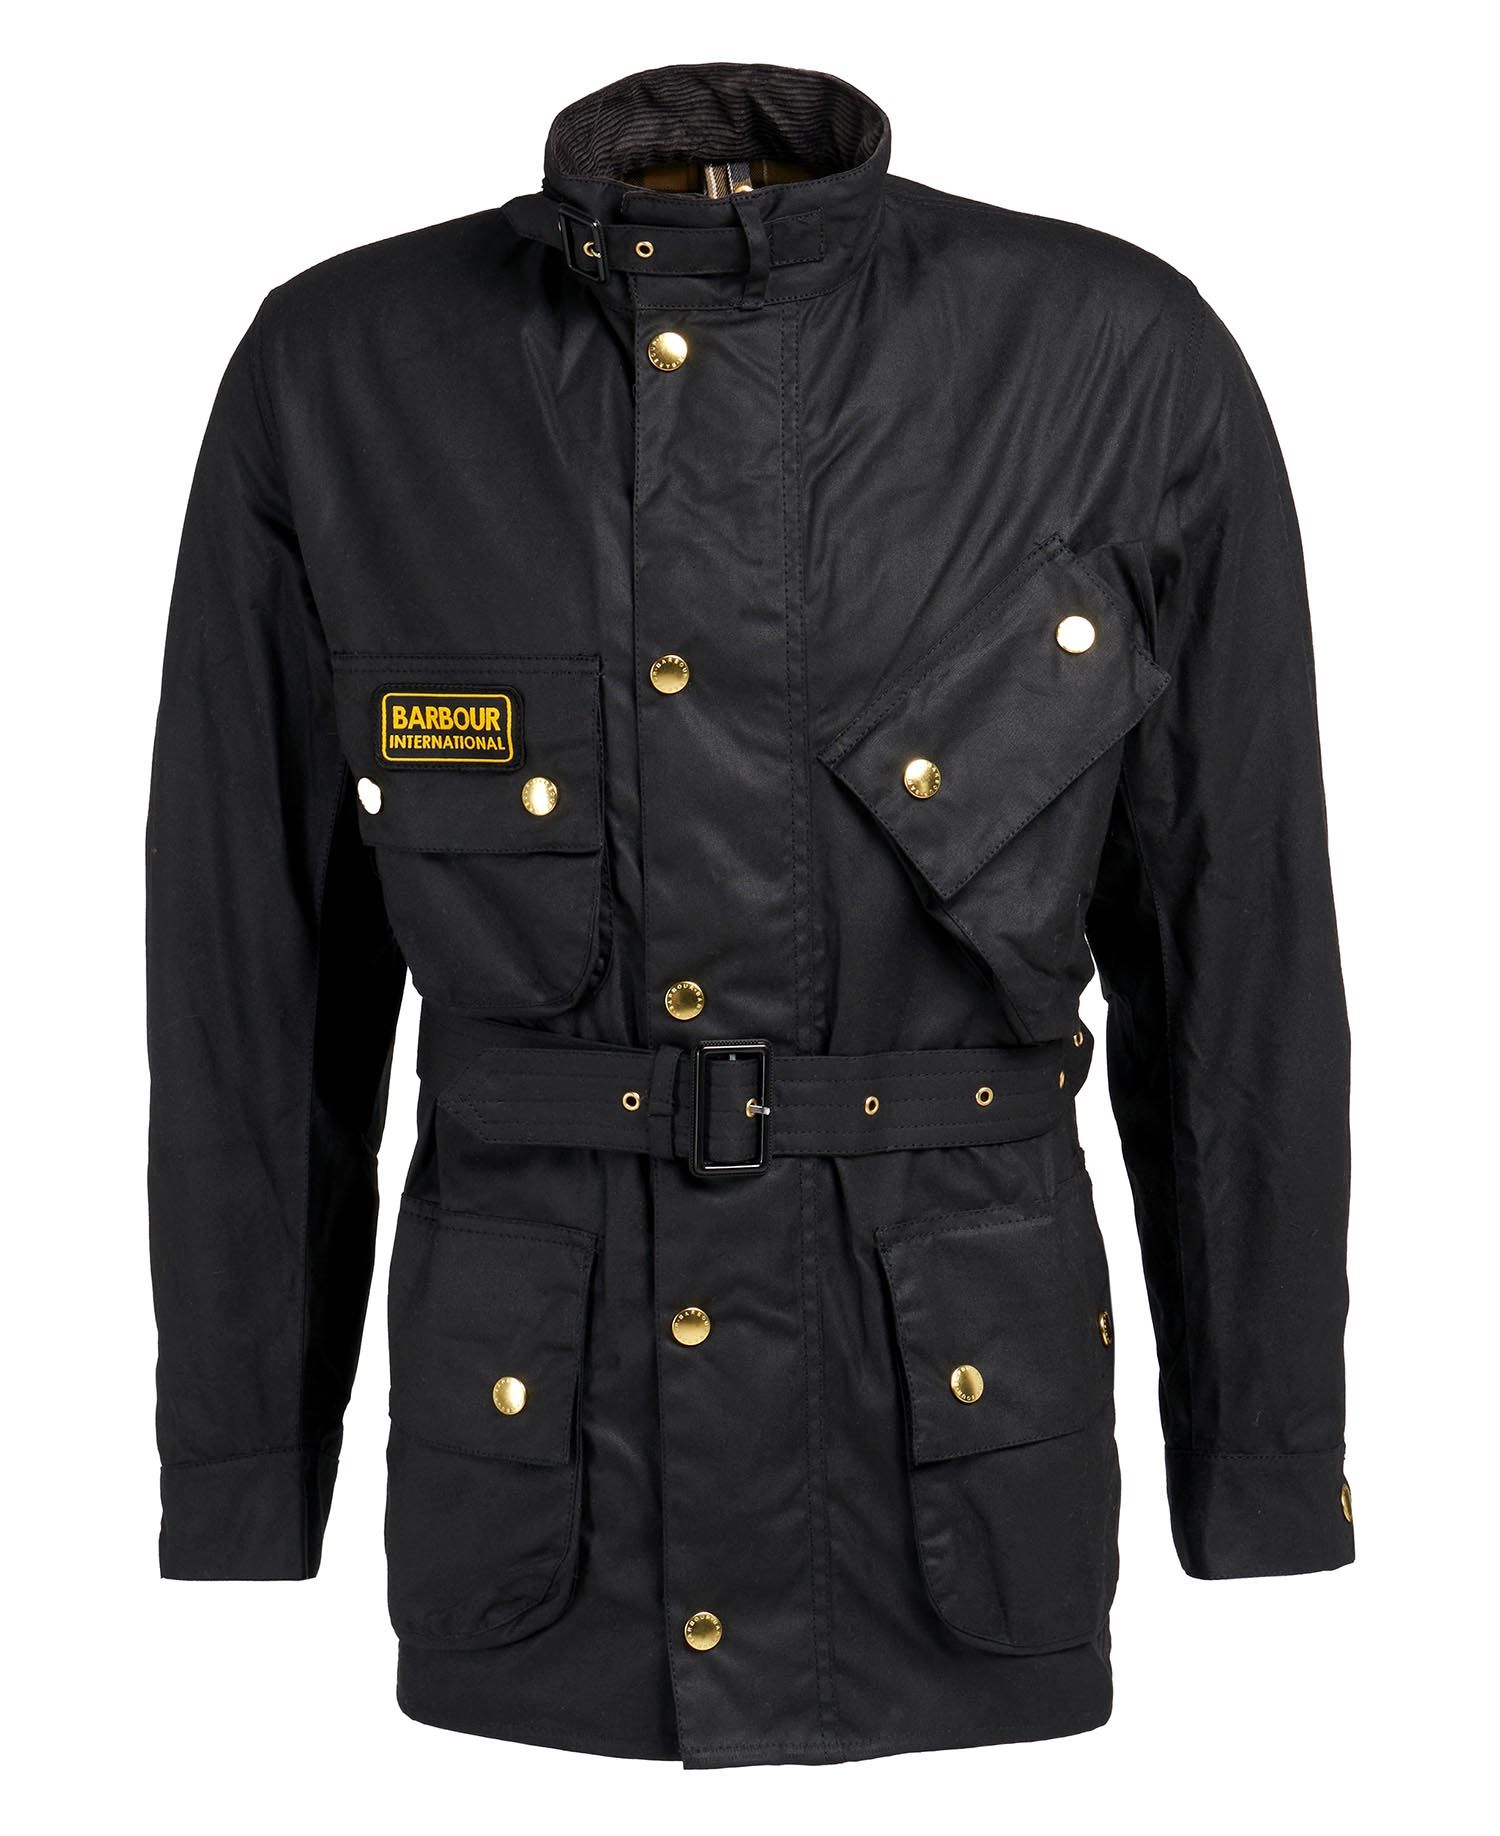 B.Intl International Original Waxed Jacket in Black | Barbour